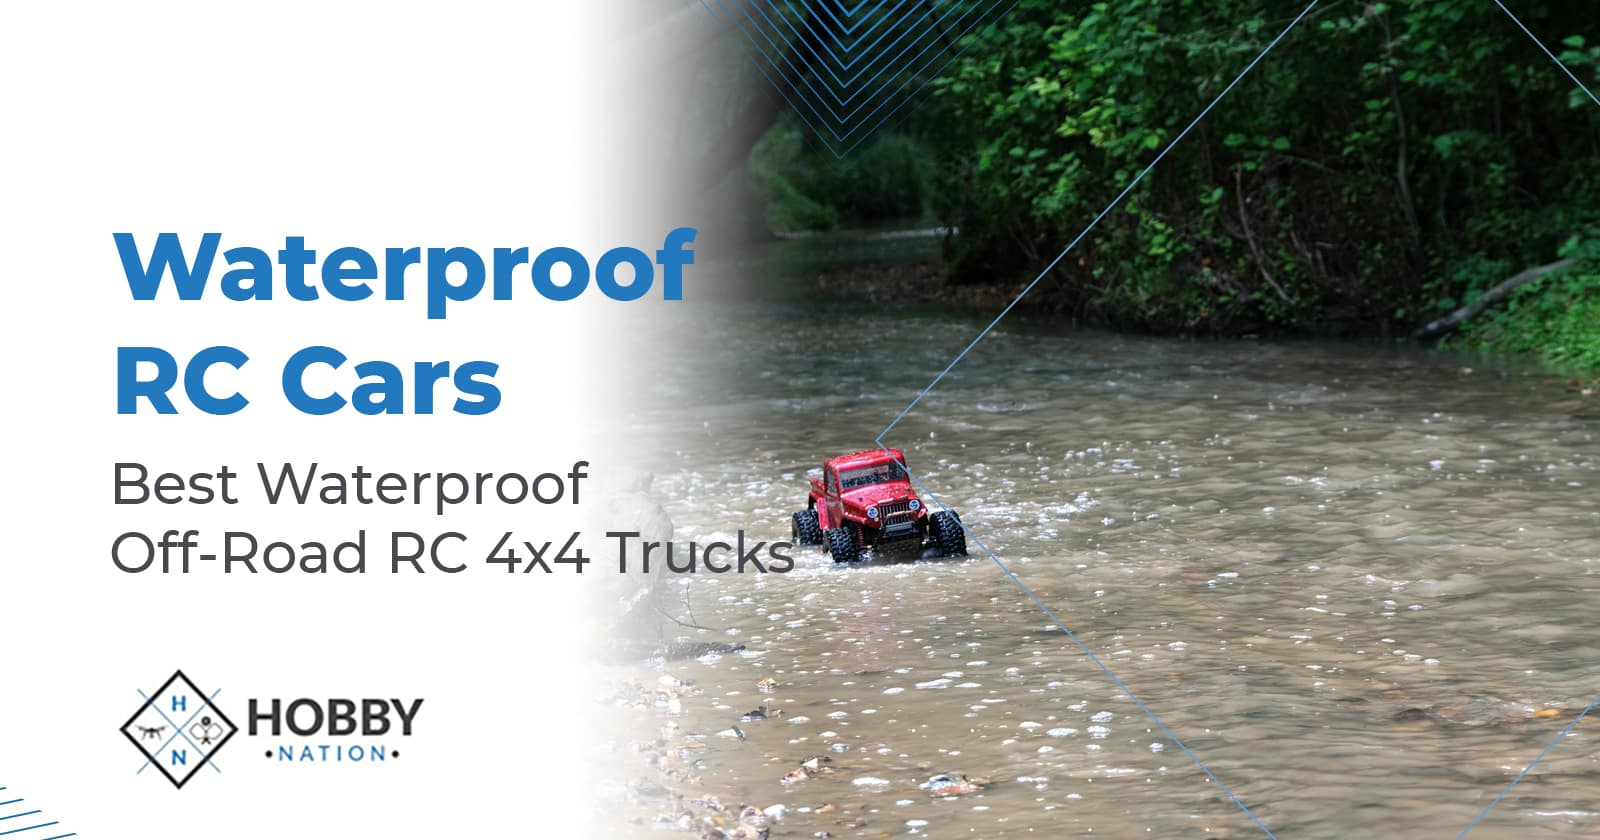 Waterproof RC Cars: Best Waterproof Off-Road RC 4×4 Trucks